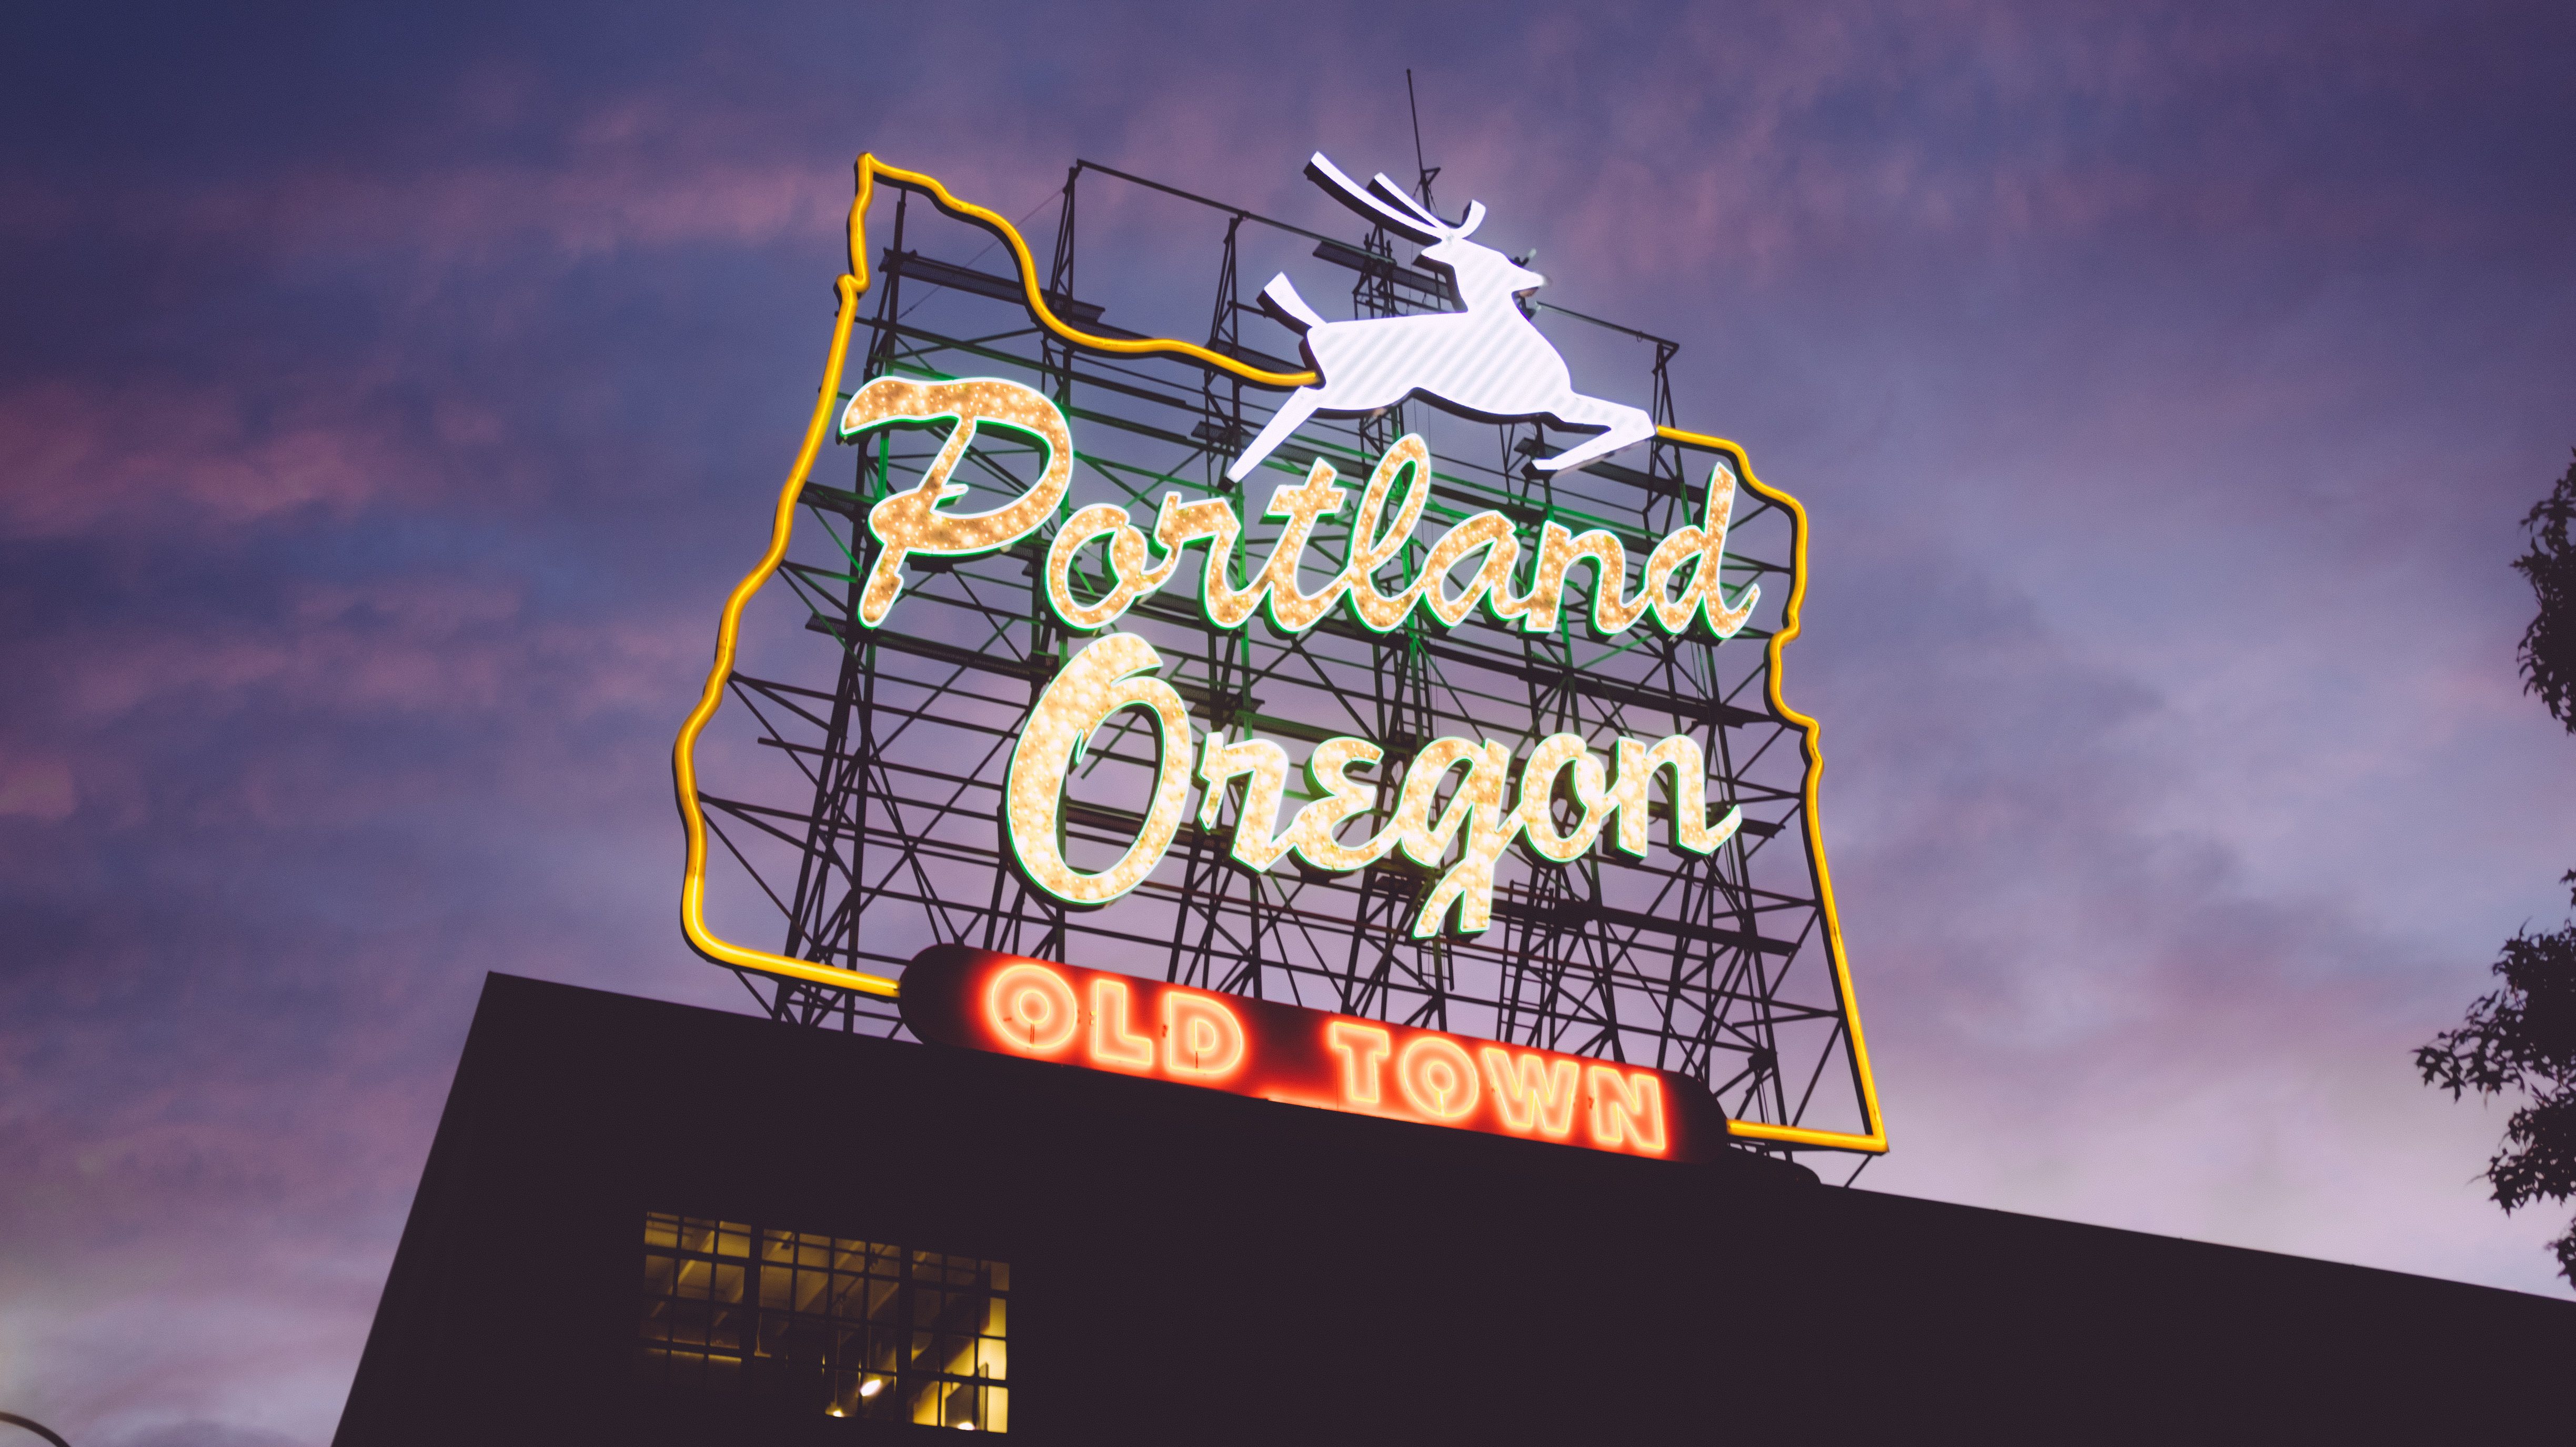 Portland - Rondreis door veelzijdig Oregon | US Travel